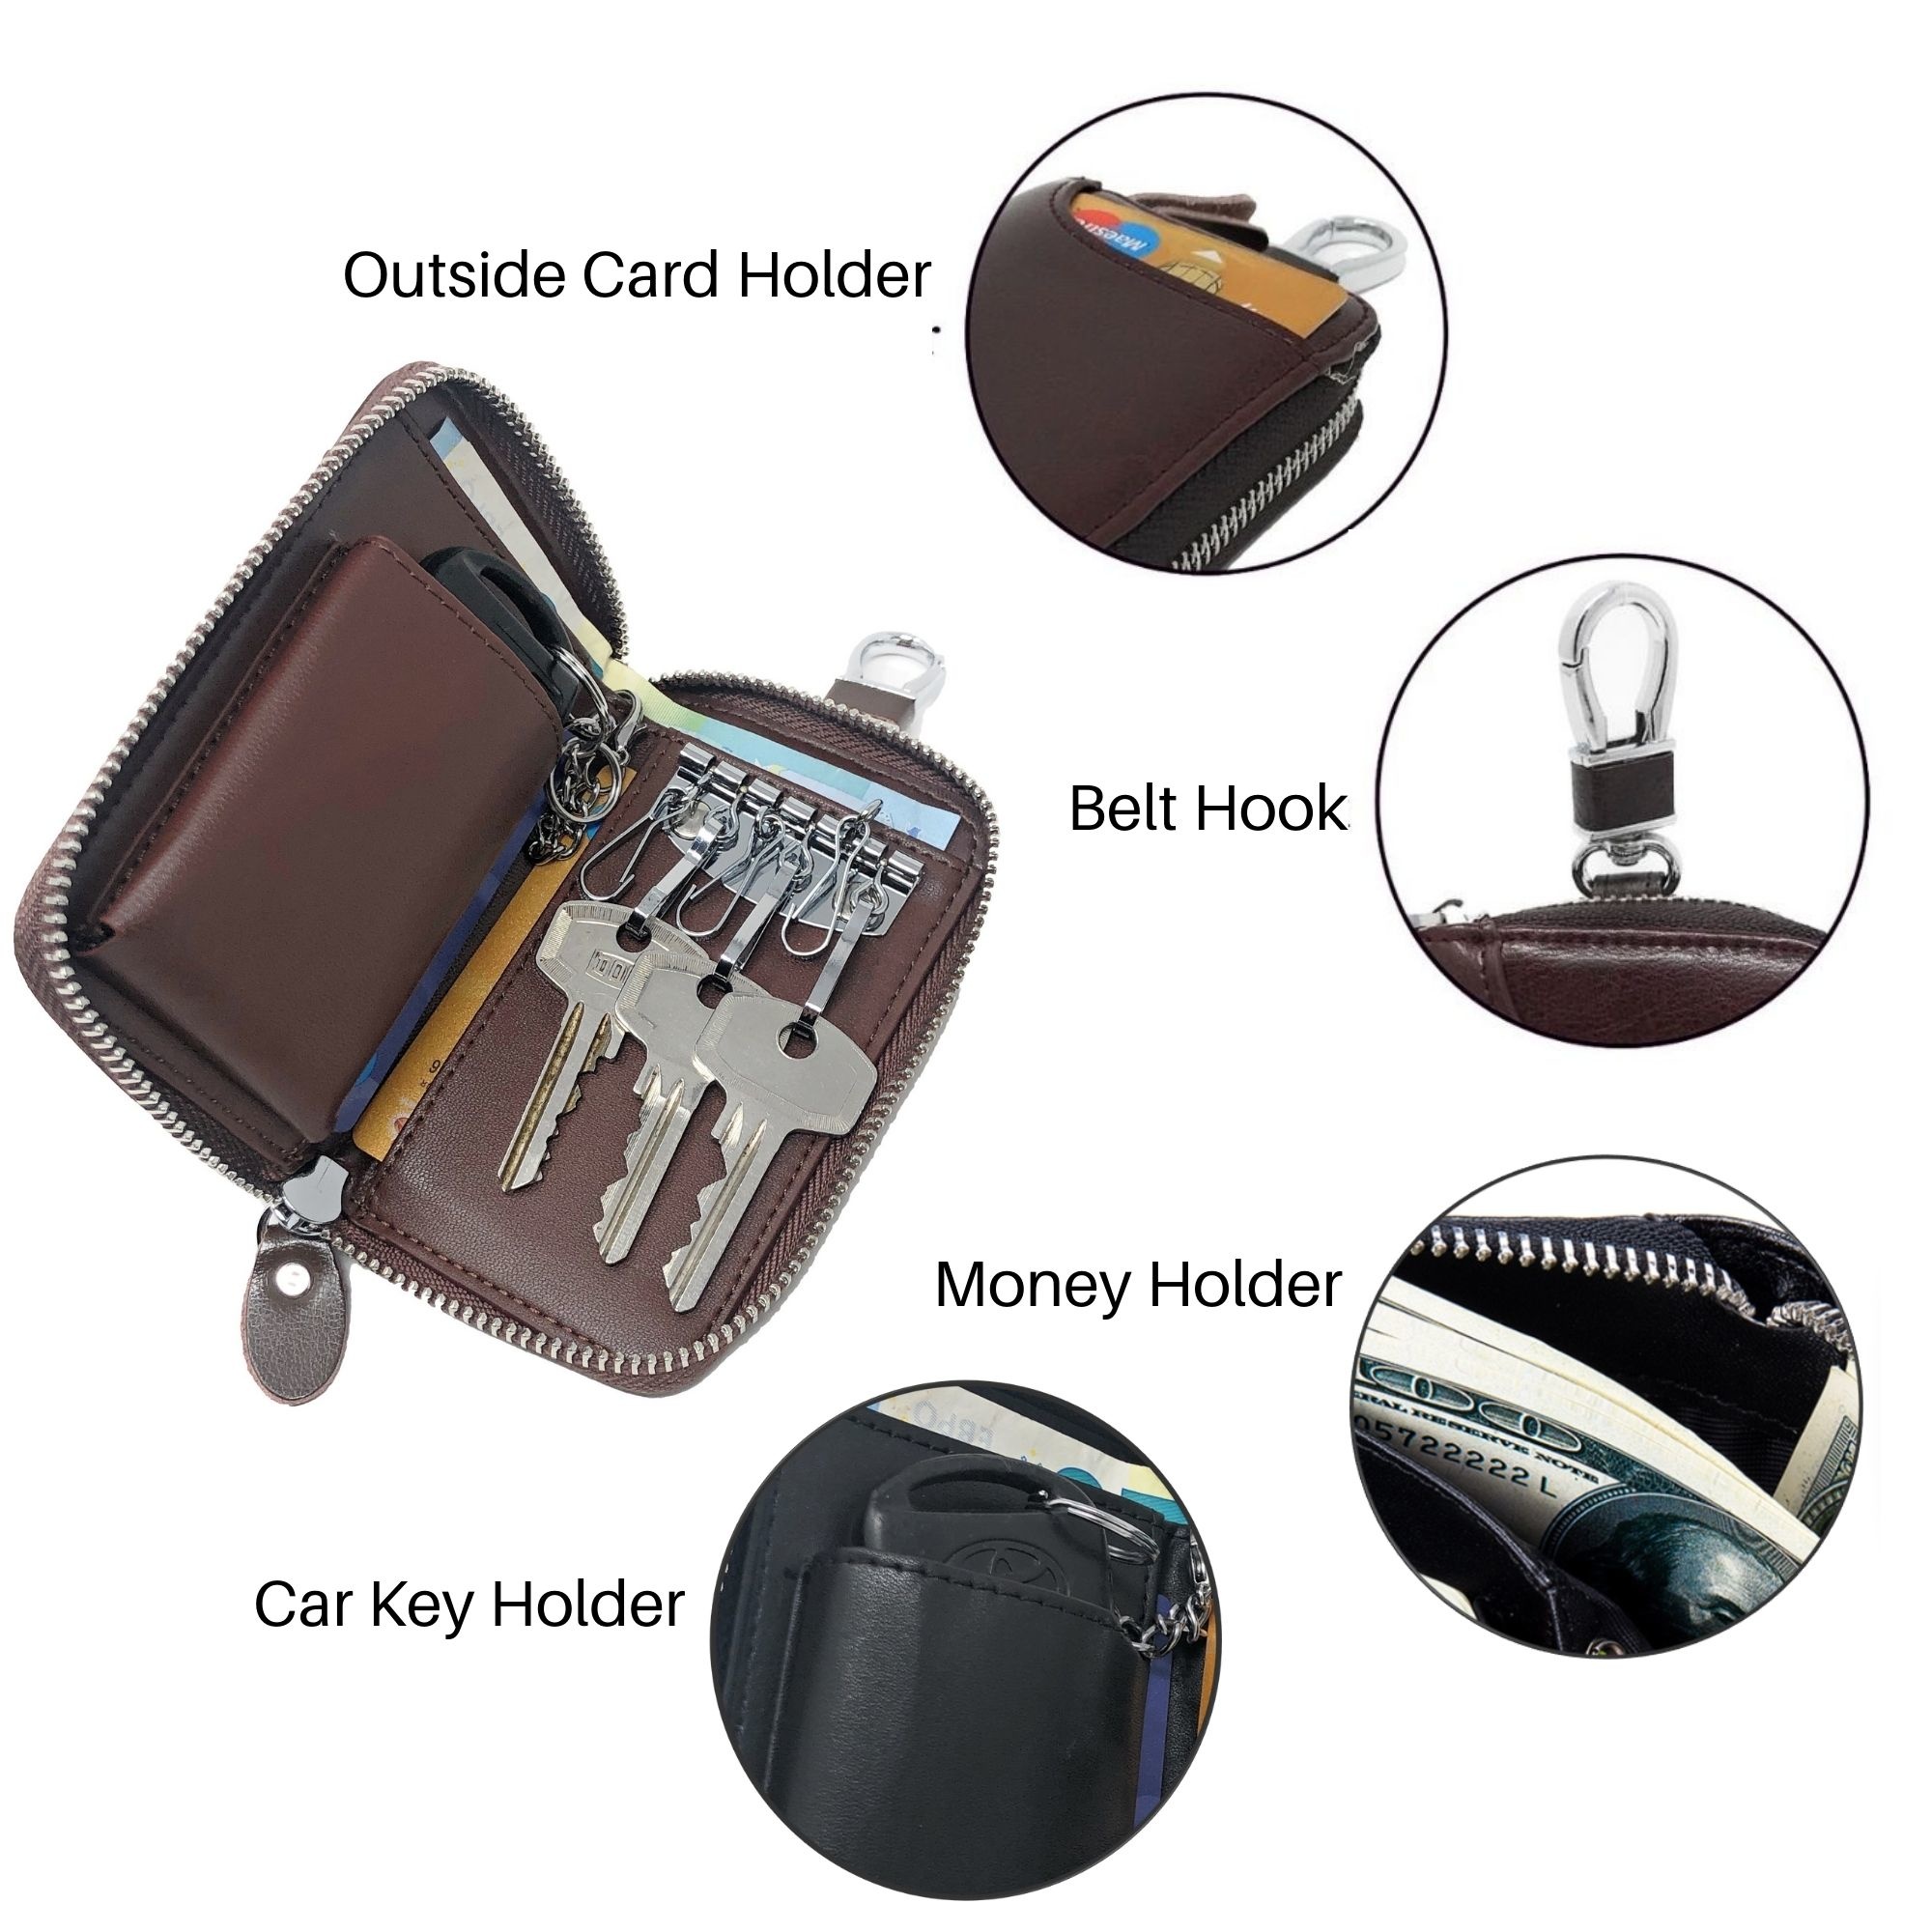 Leder-Schlüsseletui, 6 Schlüsselhaken, Kartenhalter, Geldschein-Brieftasche, Autoschlüsseltasche, Multifunktions-Schlüssel-Organizer - Braun-7